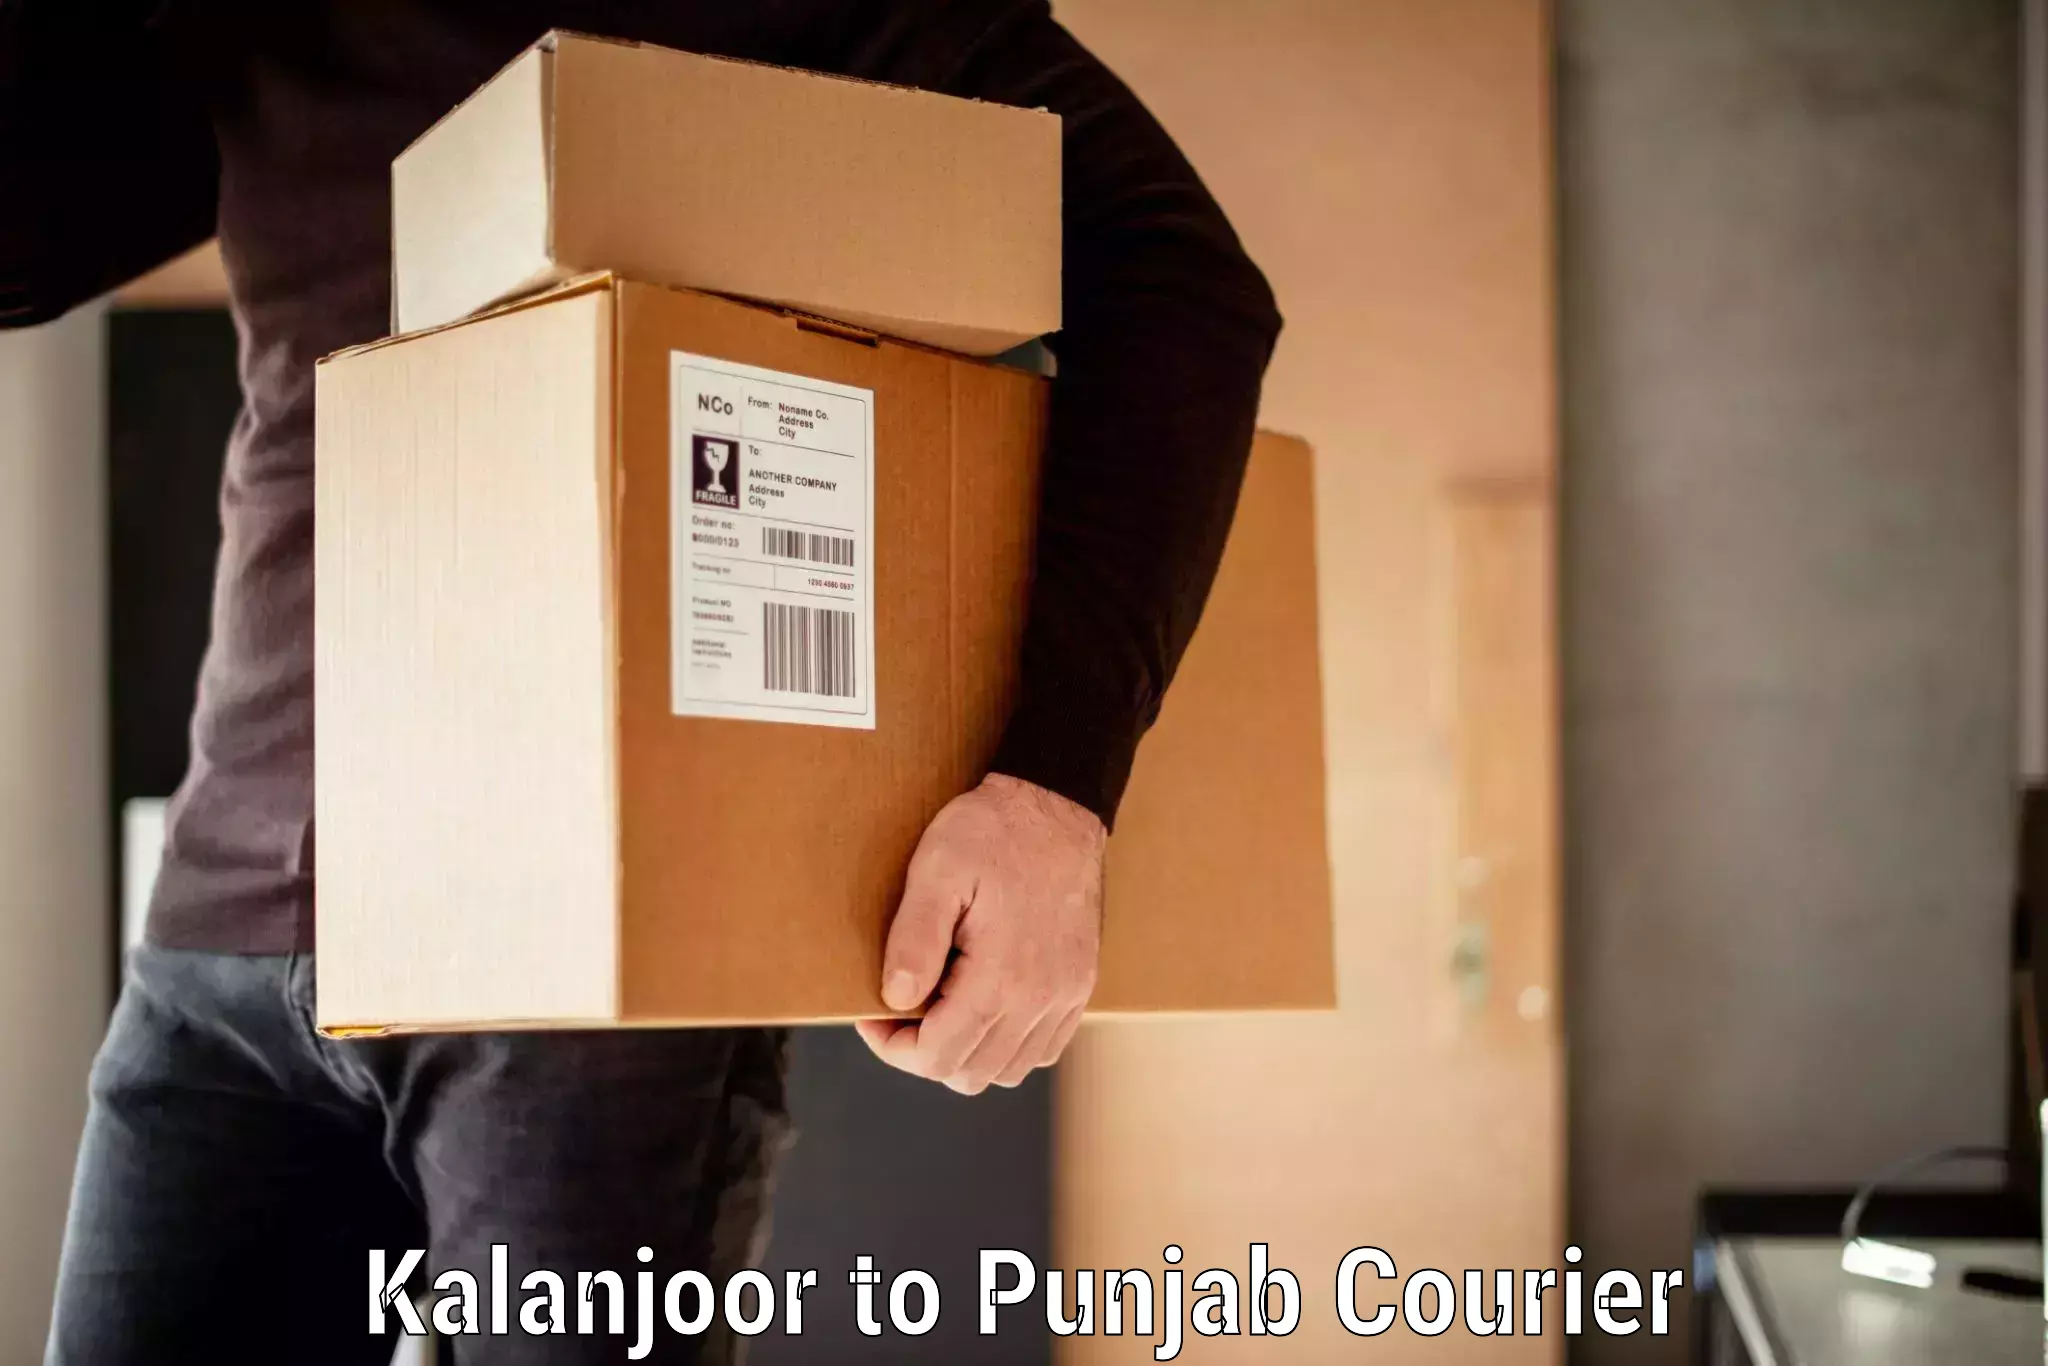 Baggage transport estimate Kalanjoor to Punjab